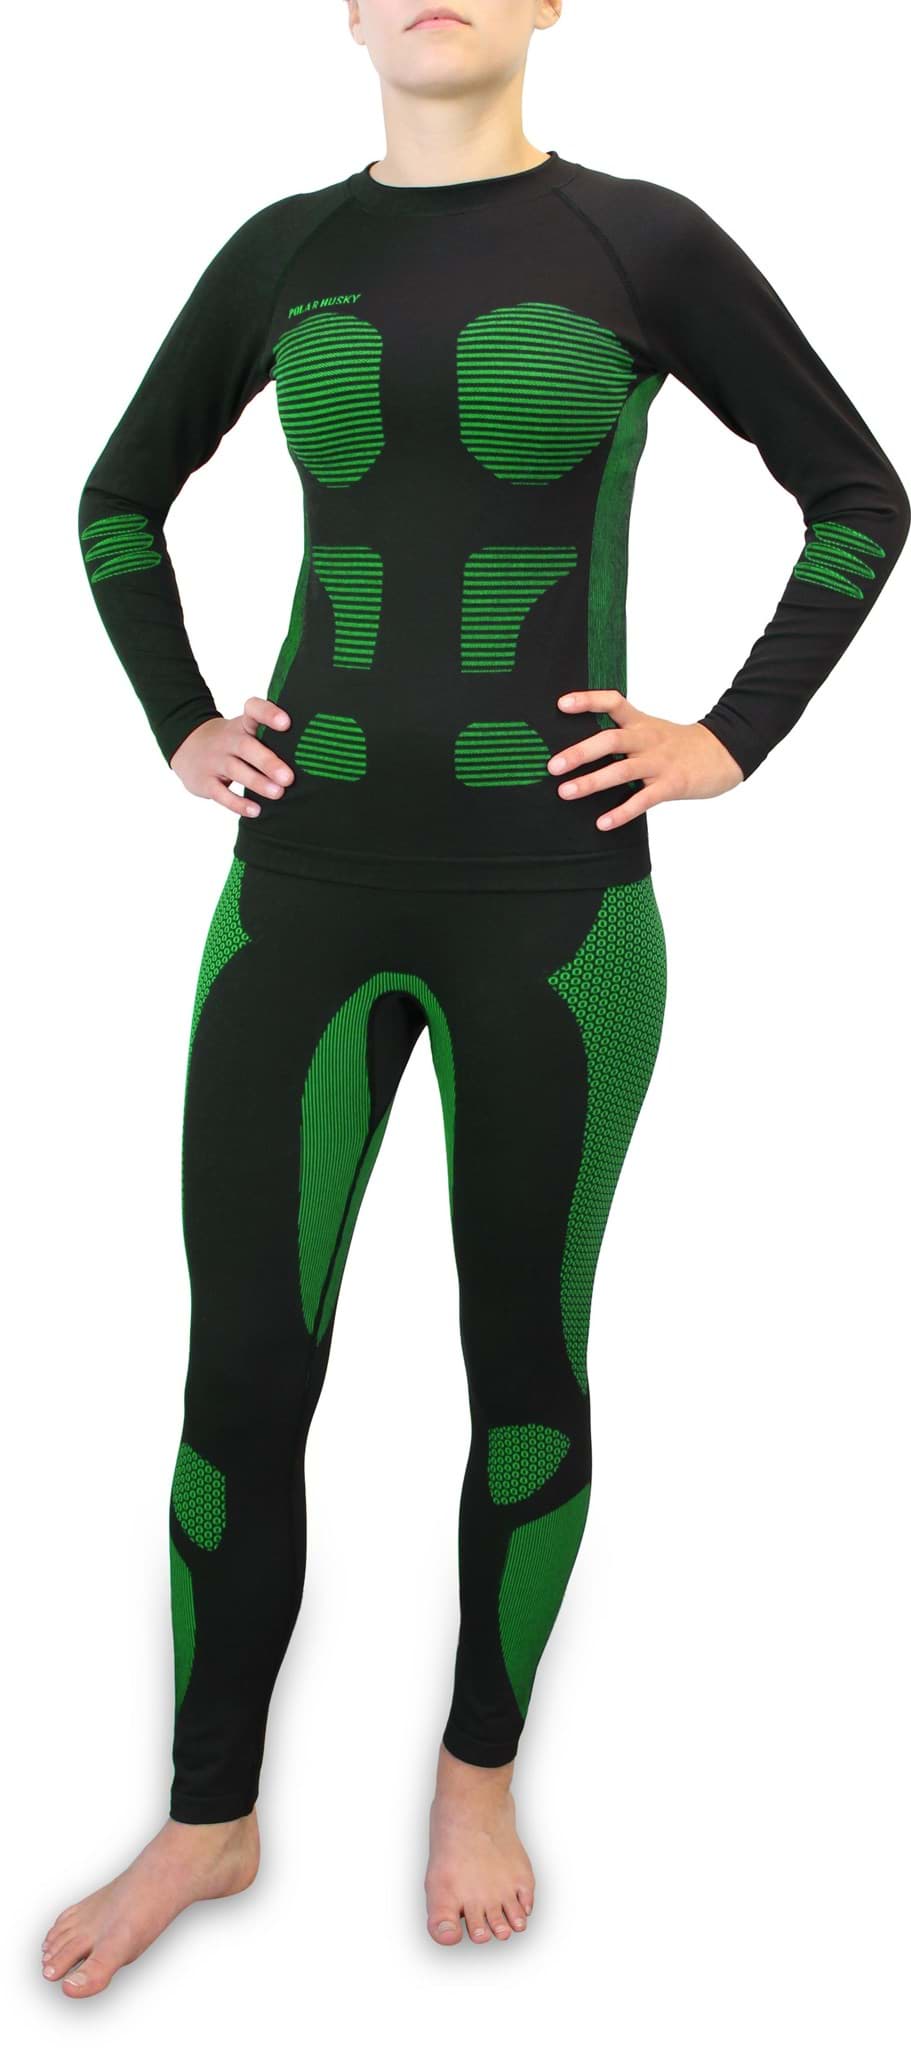 Bild von Damen-Funktionsunterwäsche-Set „Anatomic Functional Wear“ Grün